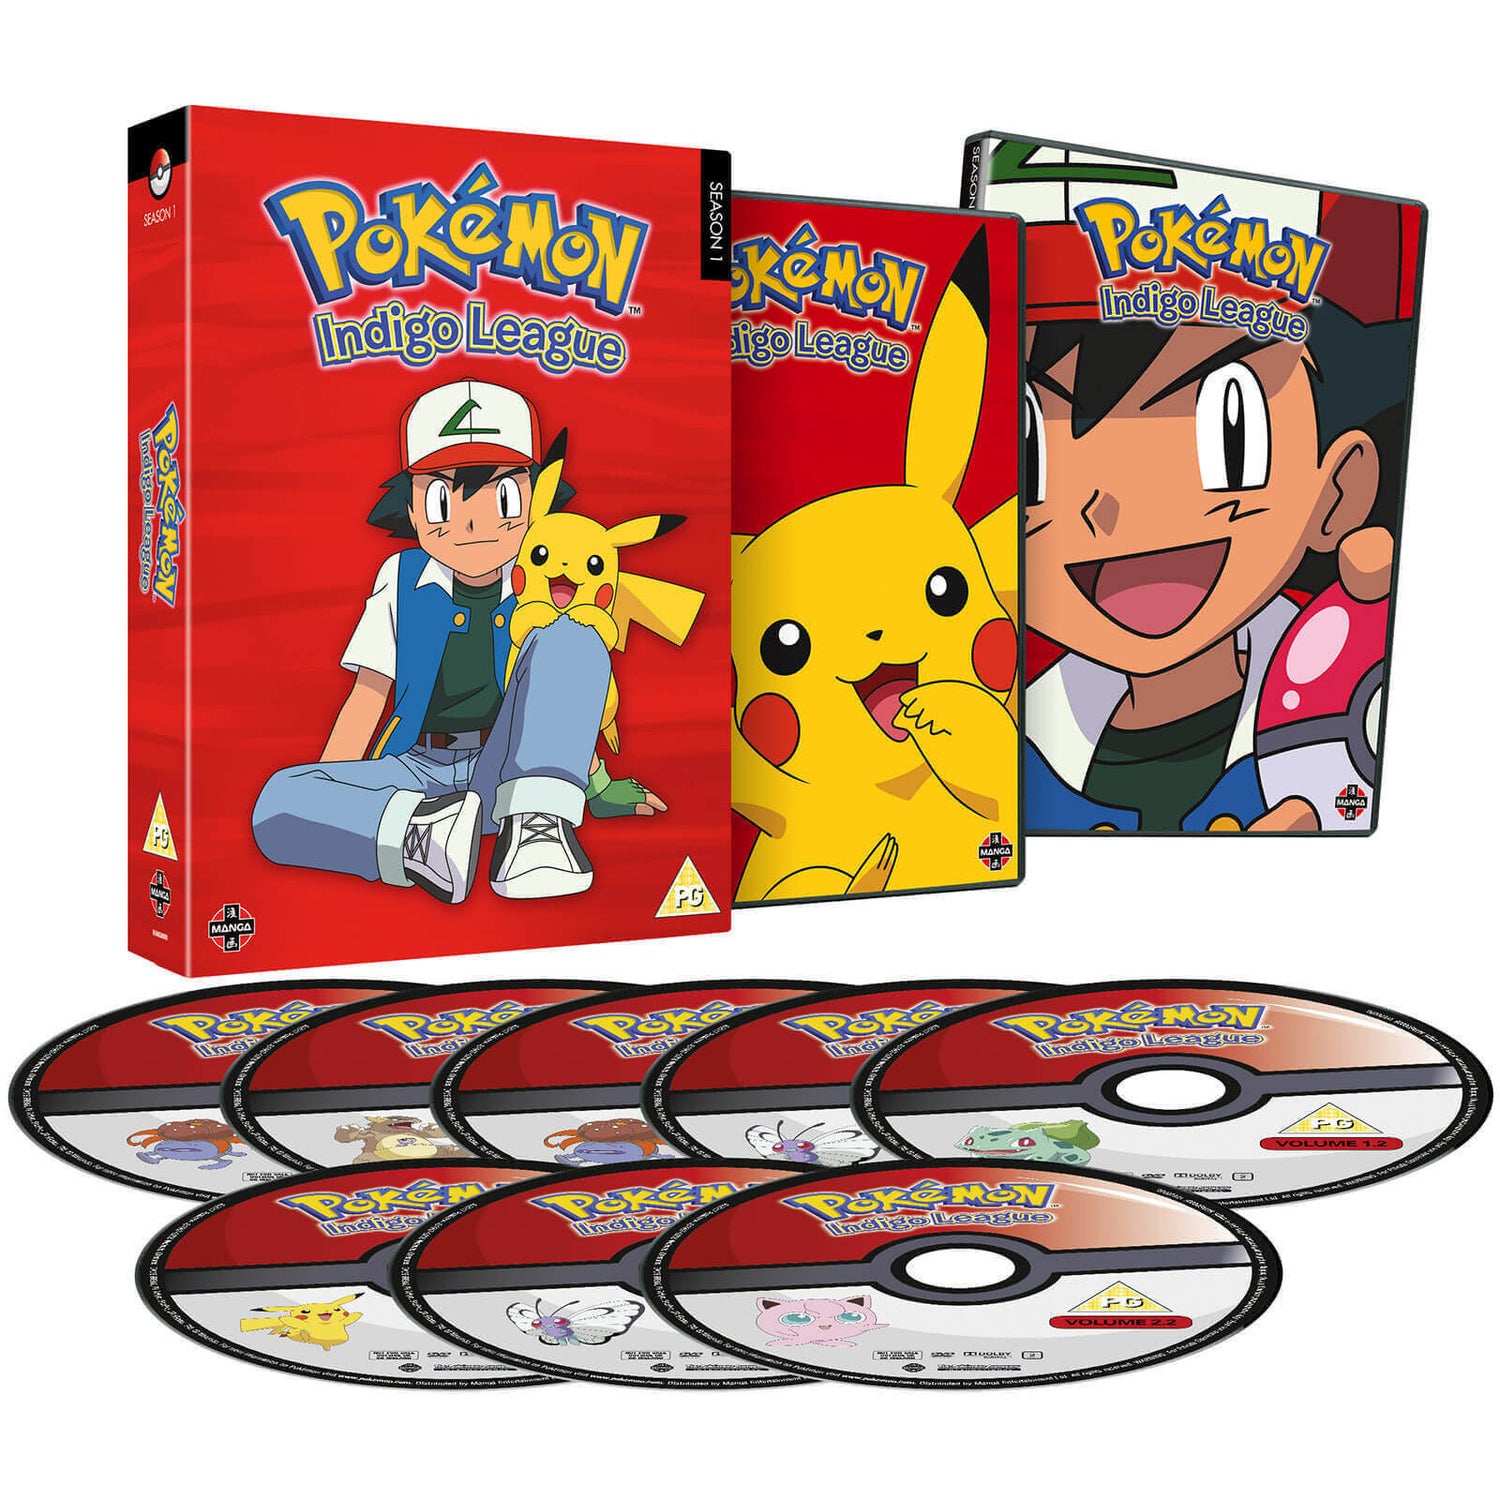 Pokémon Indigo League - Season 1 Box Set